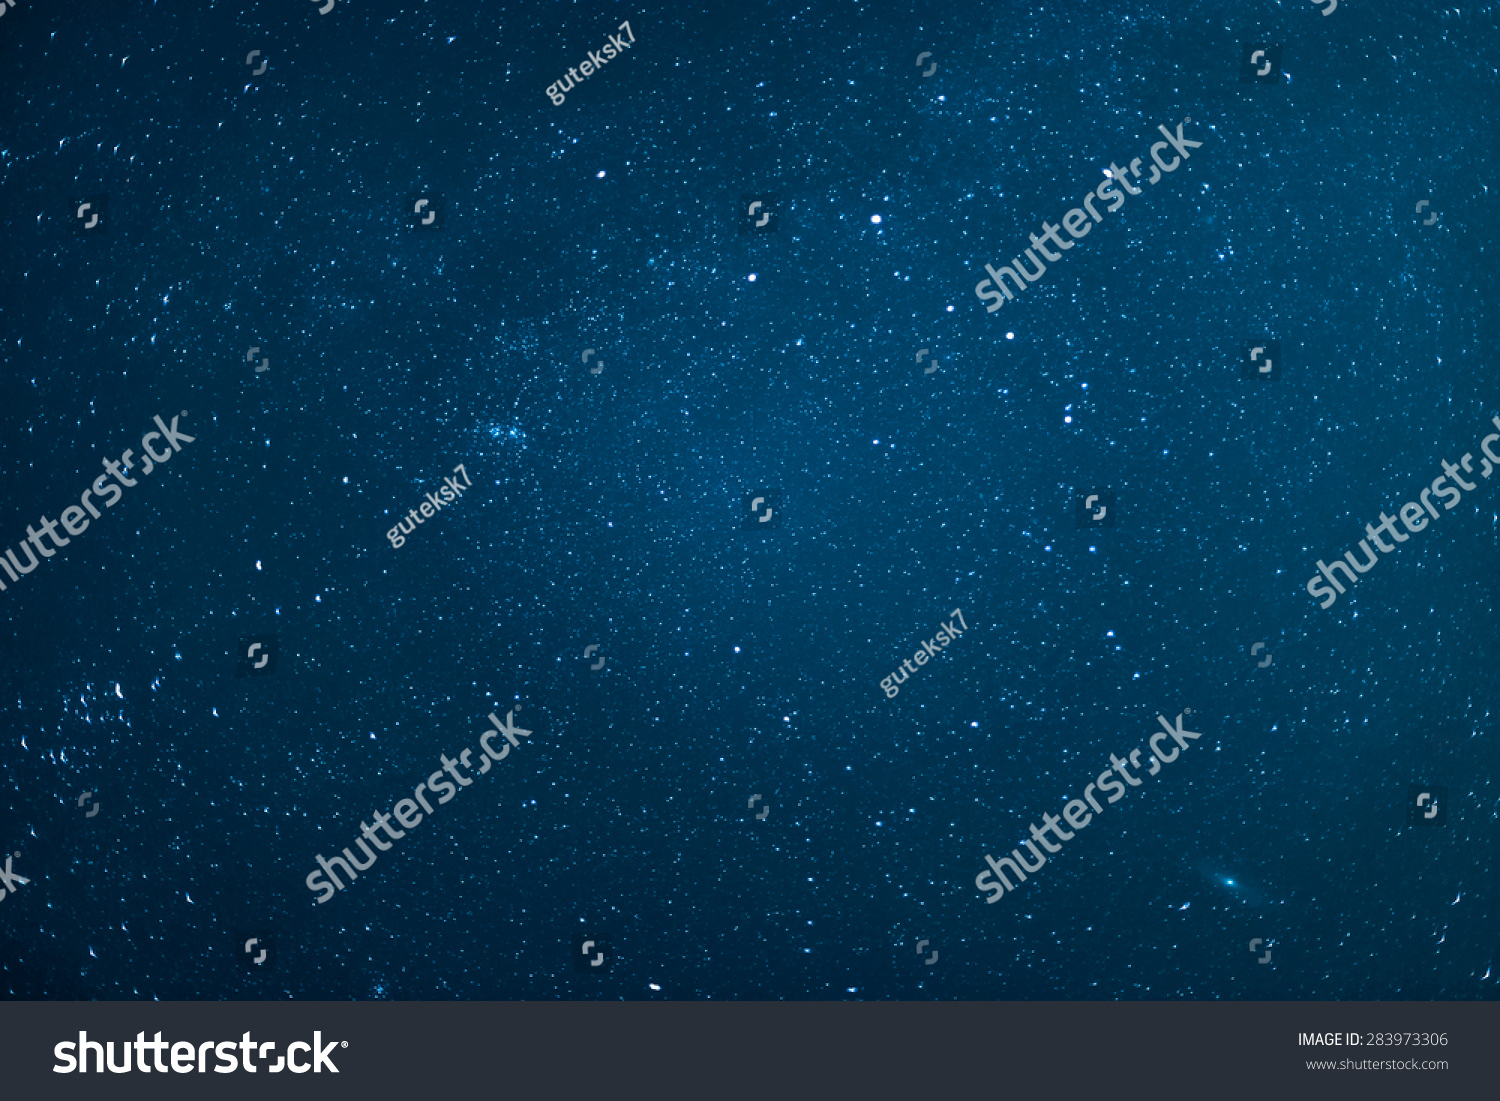 Night sky with stars. #283973306